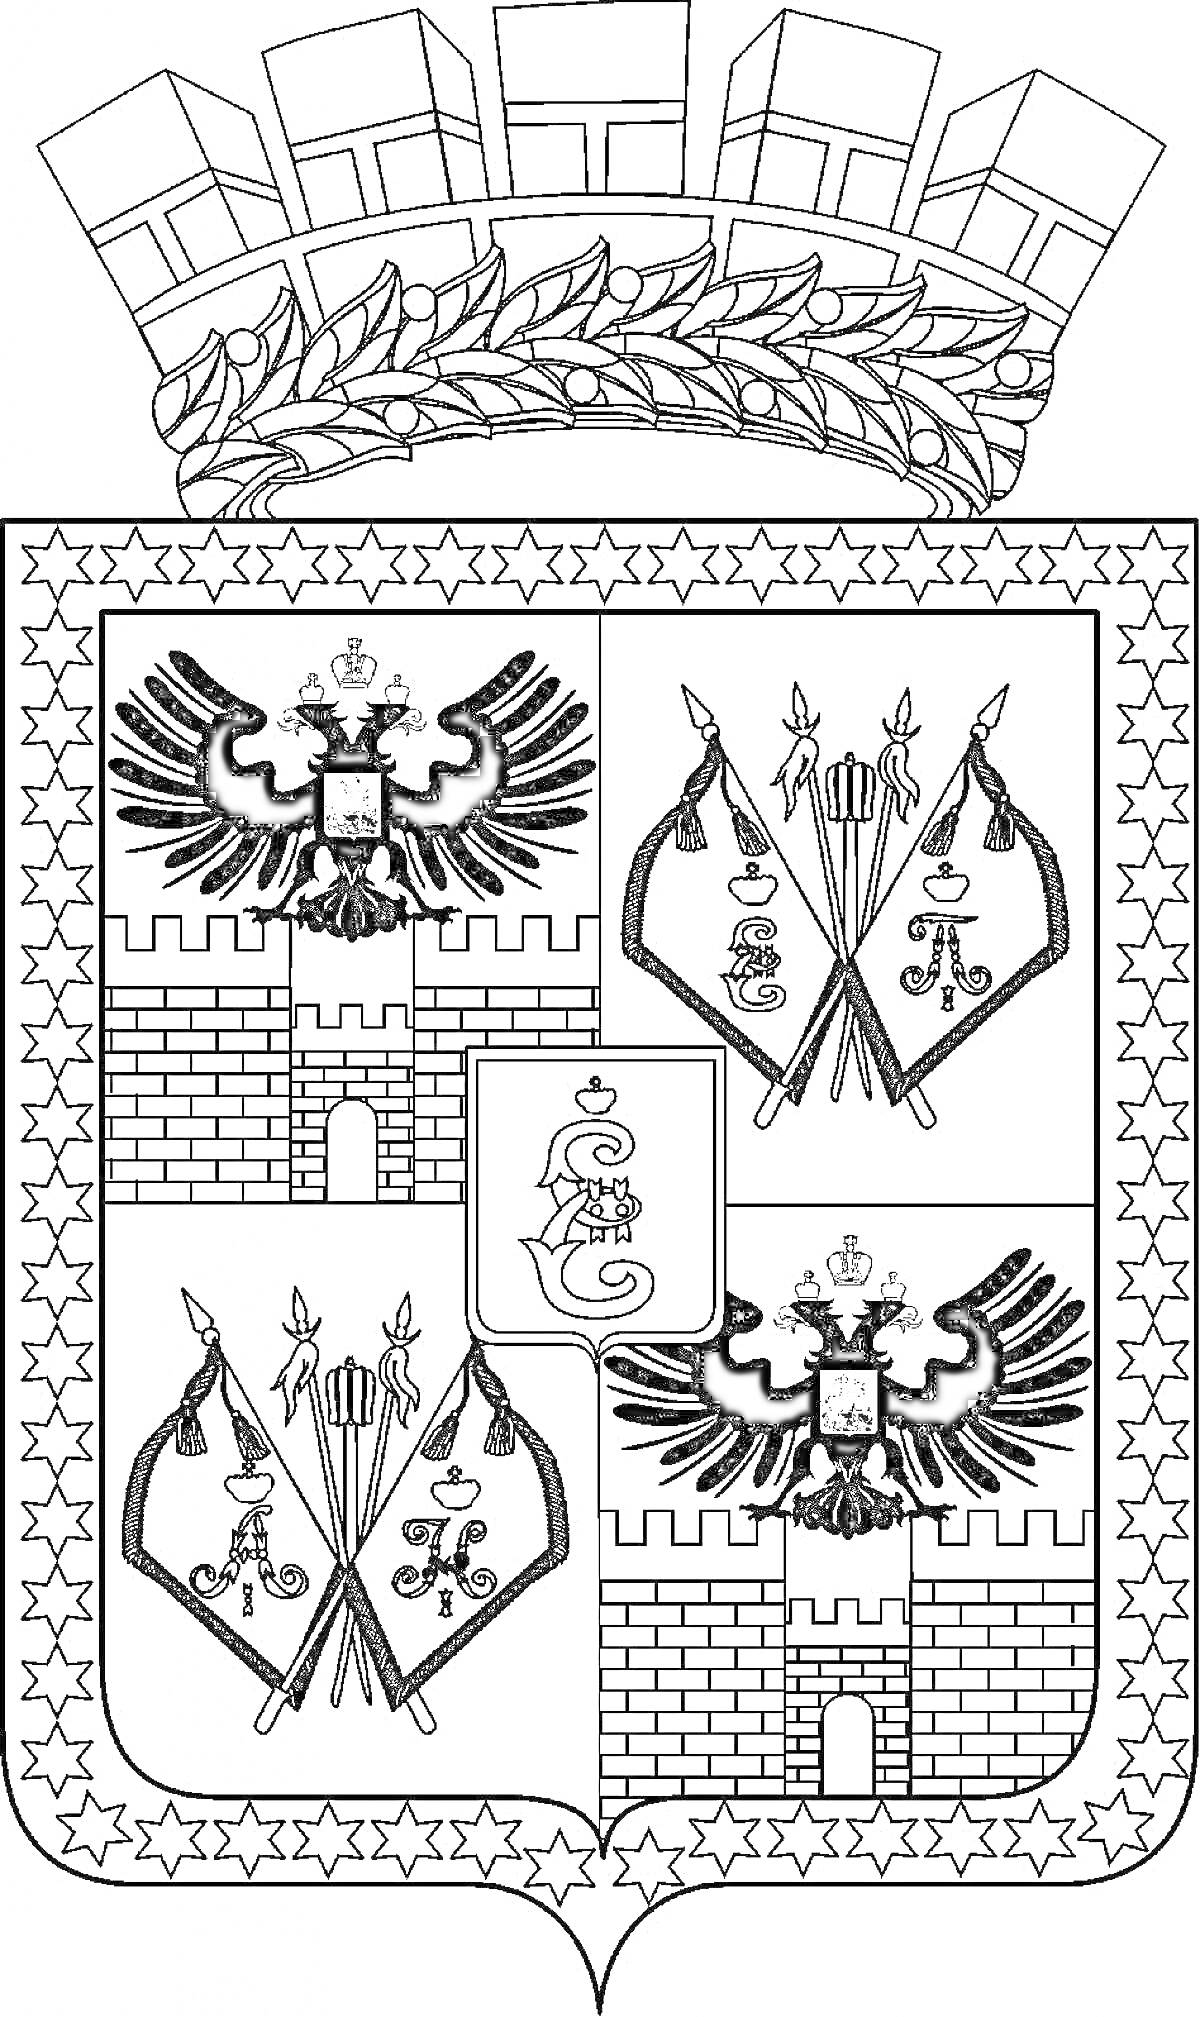 Герб Краснодарского края с двуглавыми орлами, стрелами, крепостными стенами и щитом с монограммой